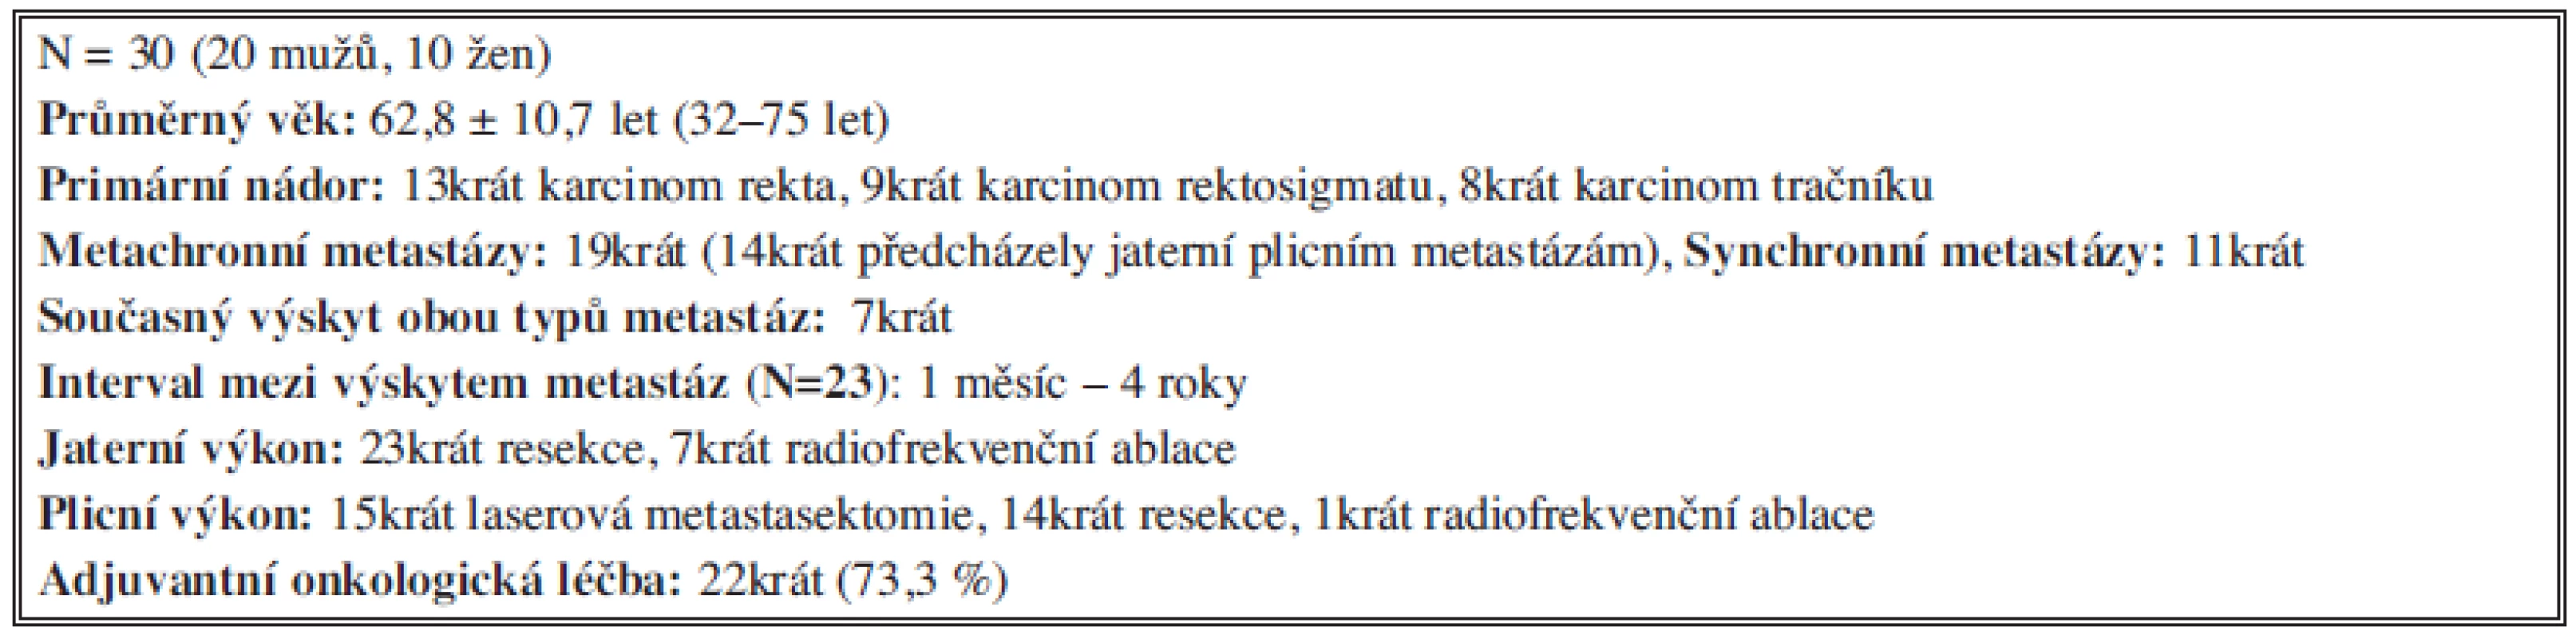 Soubor nemocných (2002–4/2013) s jaterními a plicními metastázami kolorektálního původu
Tab. 1: Group of patients (2002–4/2013)with liver and pulmonary colorectal metastases